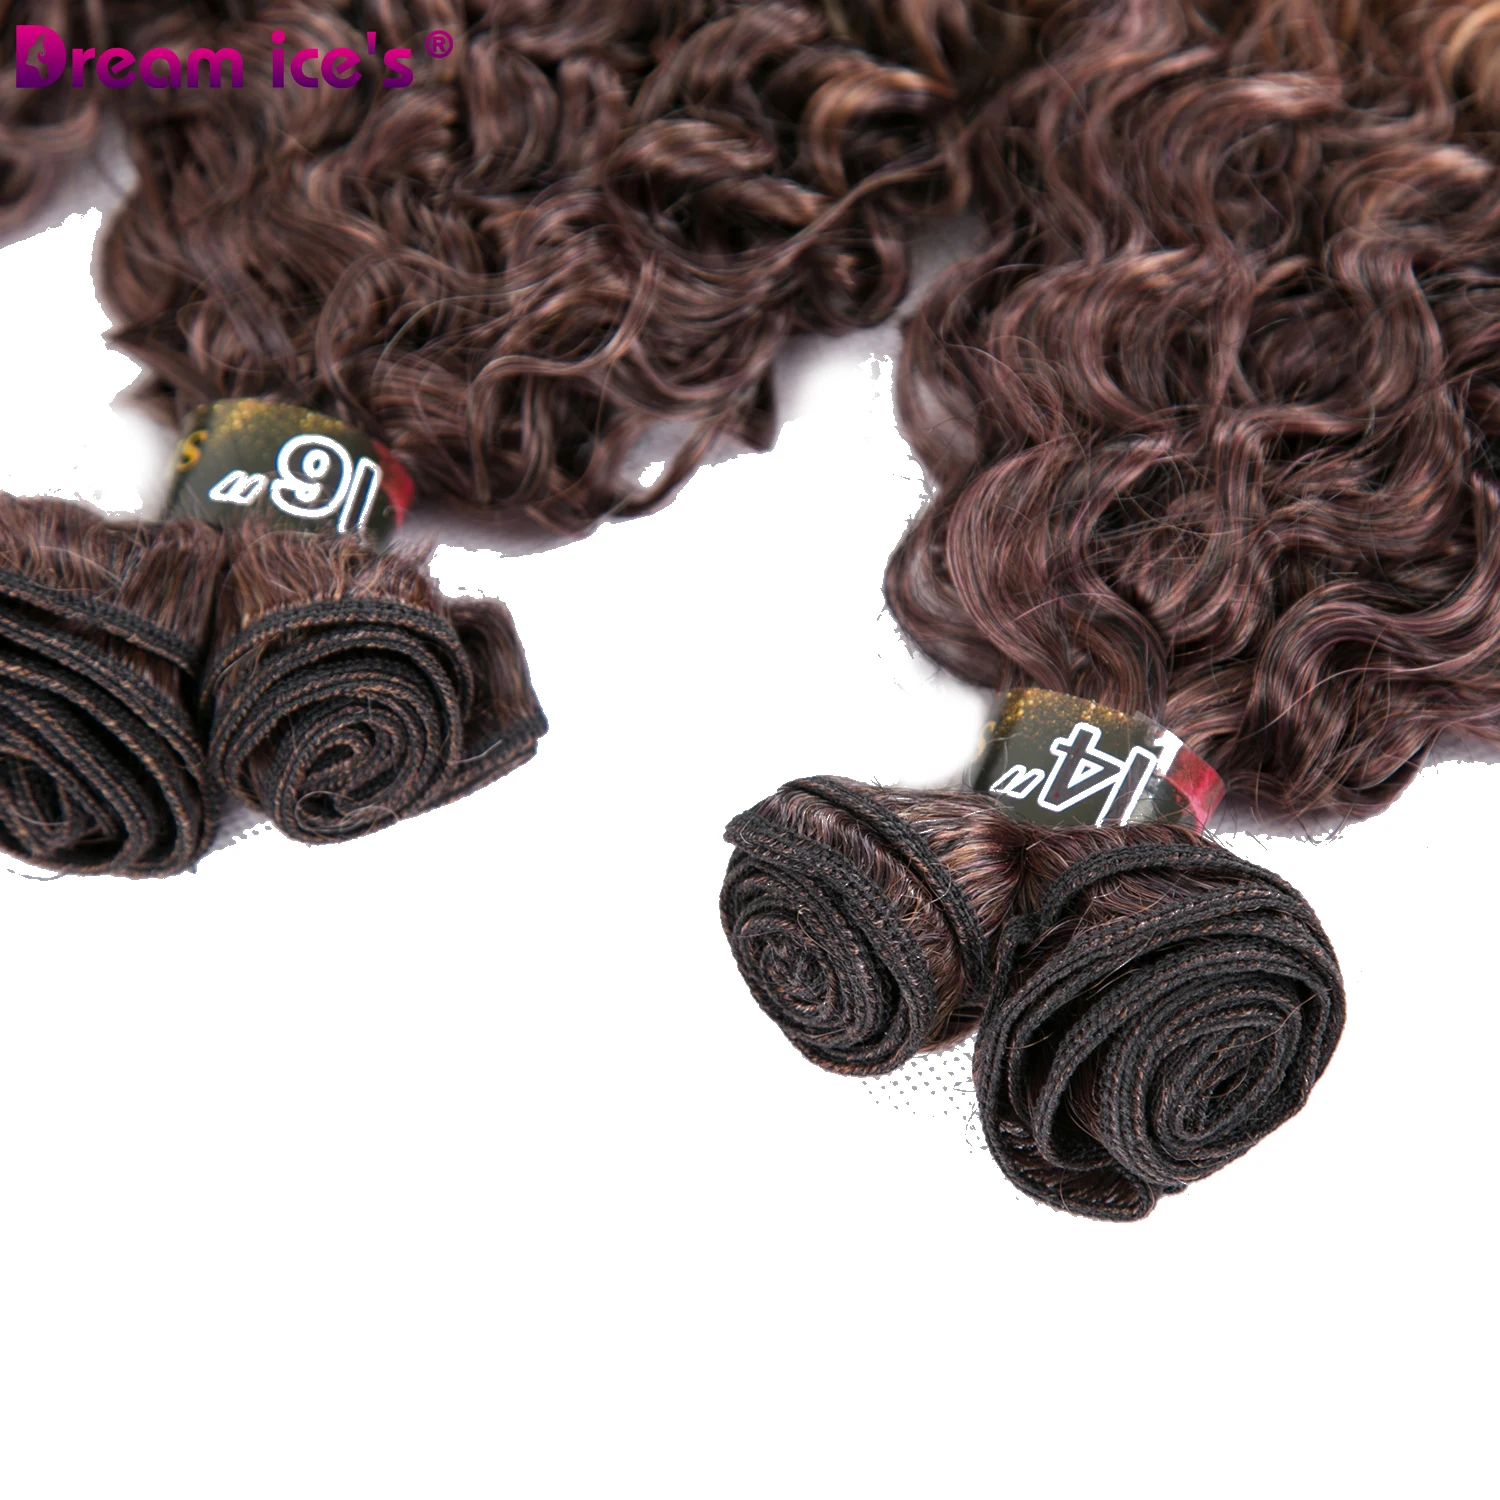 Синтетический tissage Омбре курчавые пучки вьющихся волос расширение афро плетение шесть штук один лот для одной головы мечта льда